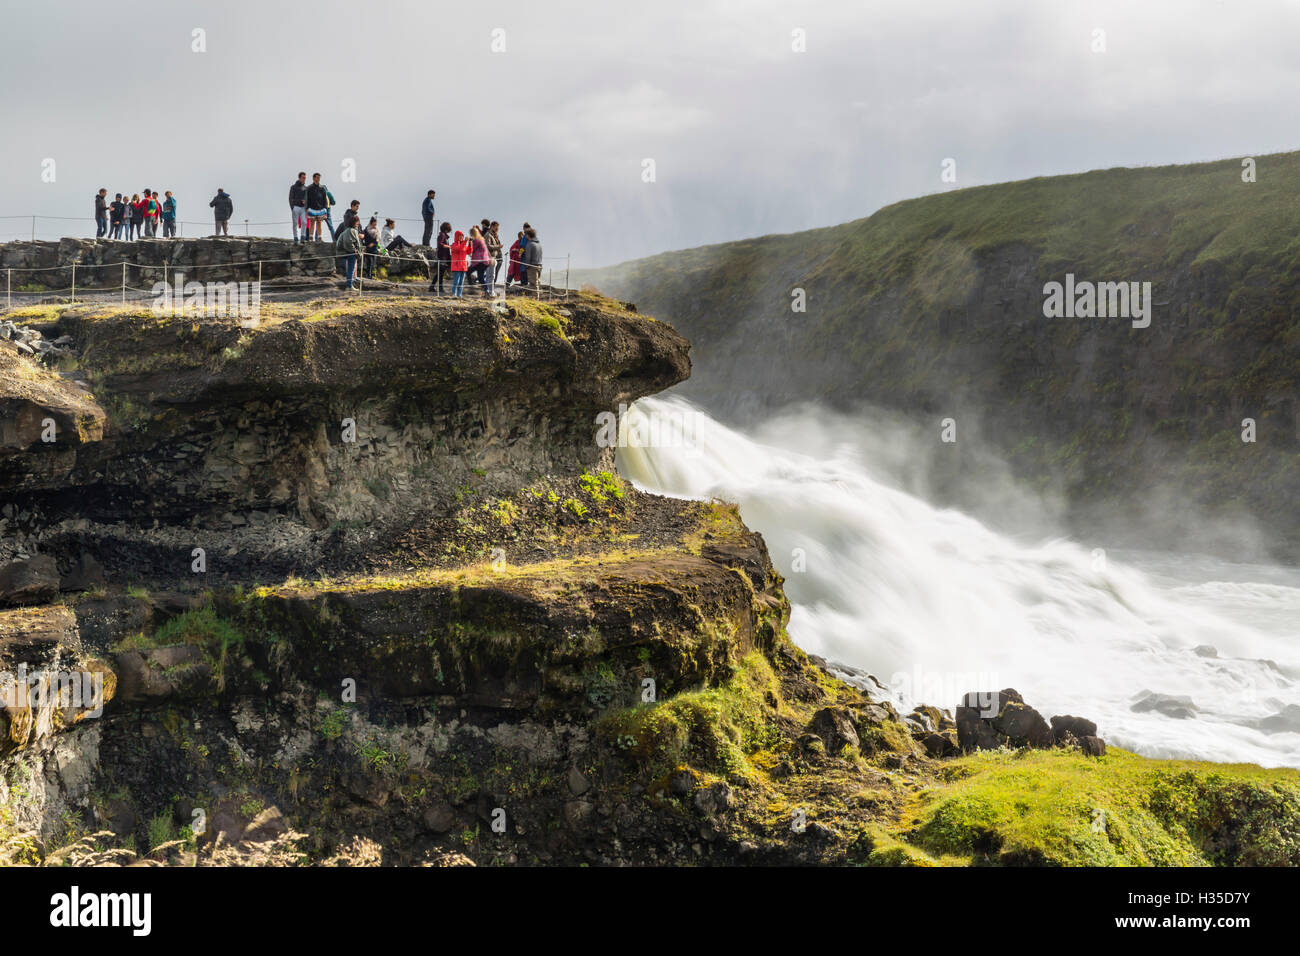 Les touristes visitant Gullfoss (Chutes d'Or), une cascade situé dans le canyon de la rivière Hvita au sud-ouest de l'Islande Banque D'Images